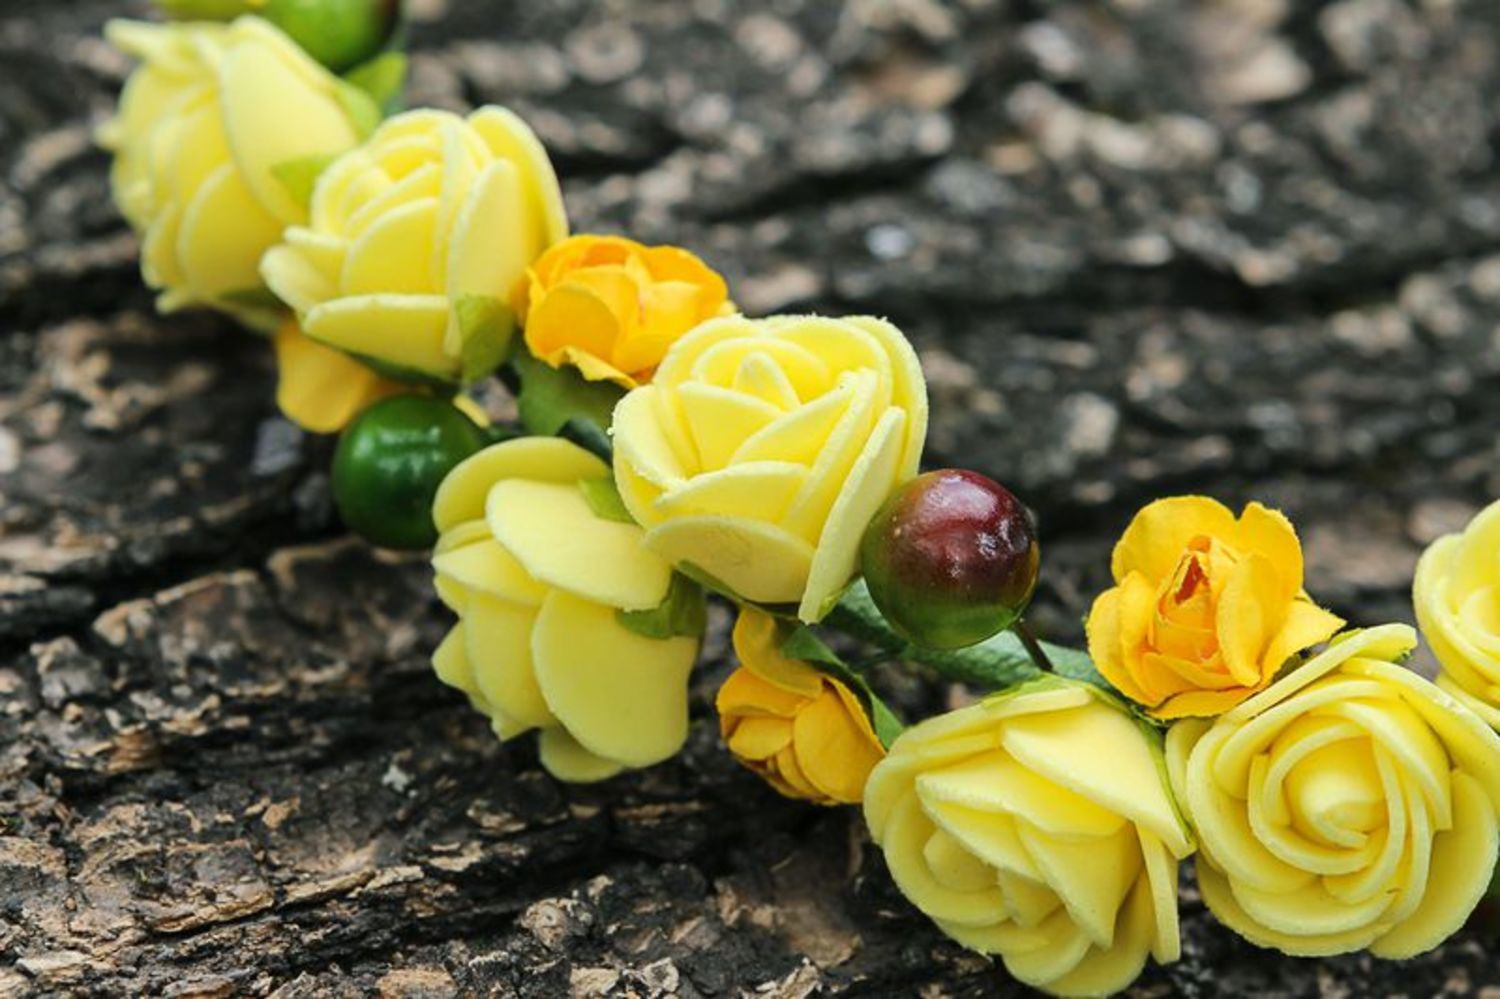 Headband Yellow roses photo 2